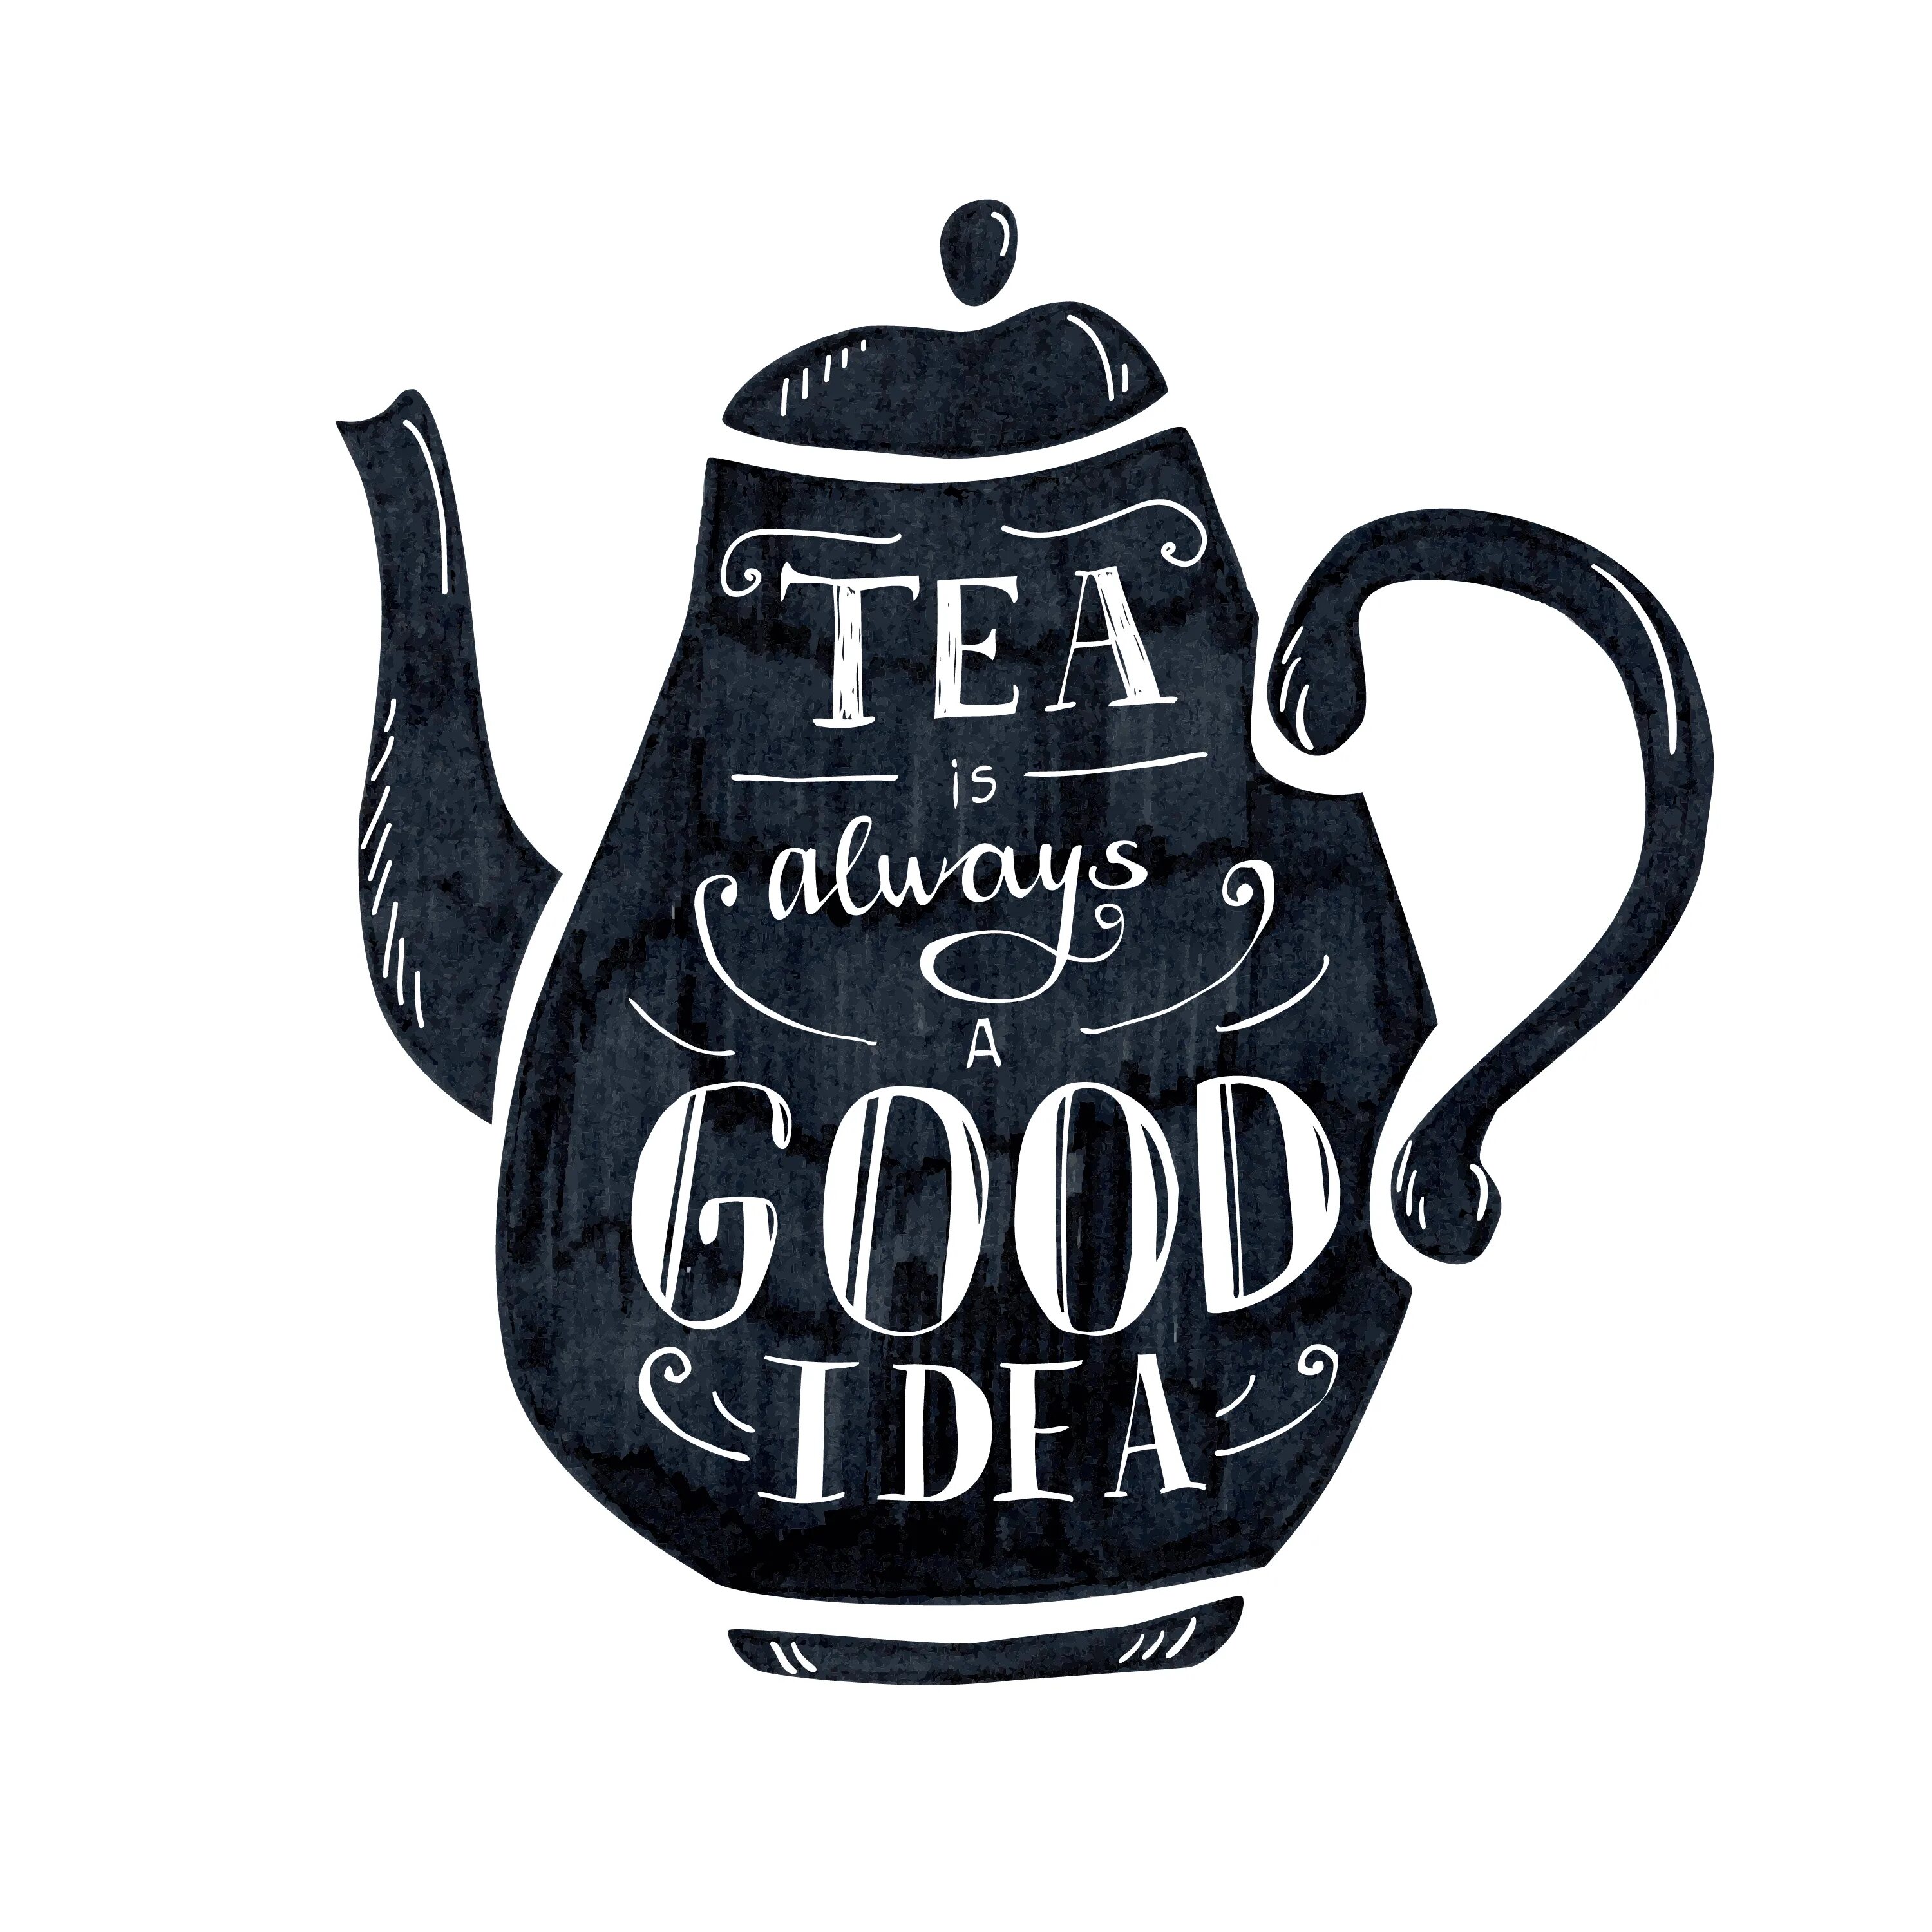 Чай надпись красивая. Надпись Tea time. Леттеринг чай. Надпись кофе для декупажа. Всегда хорошая идея